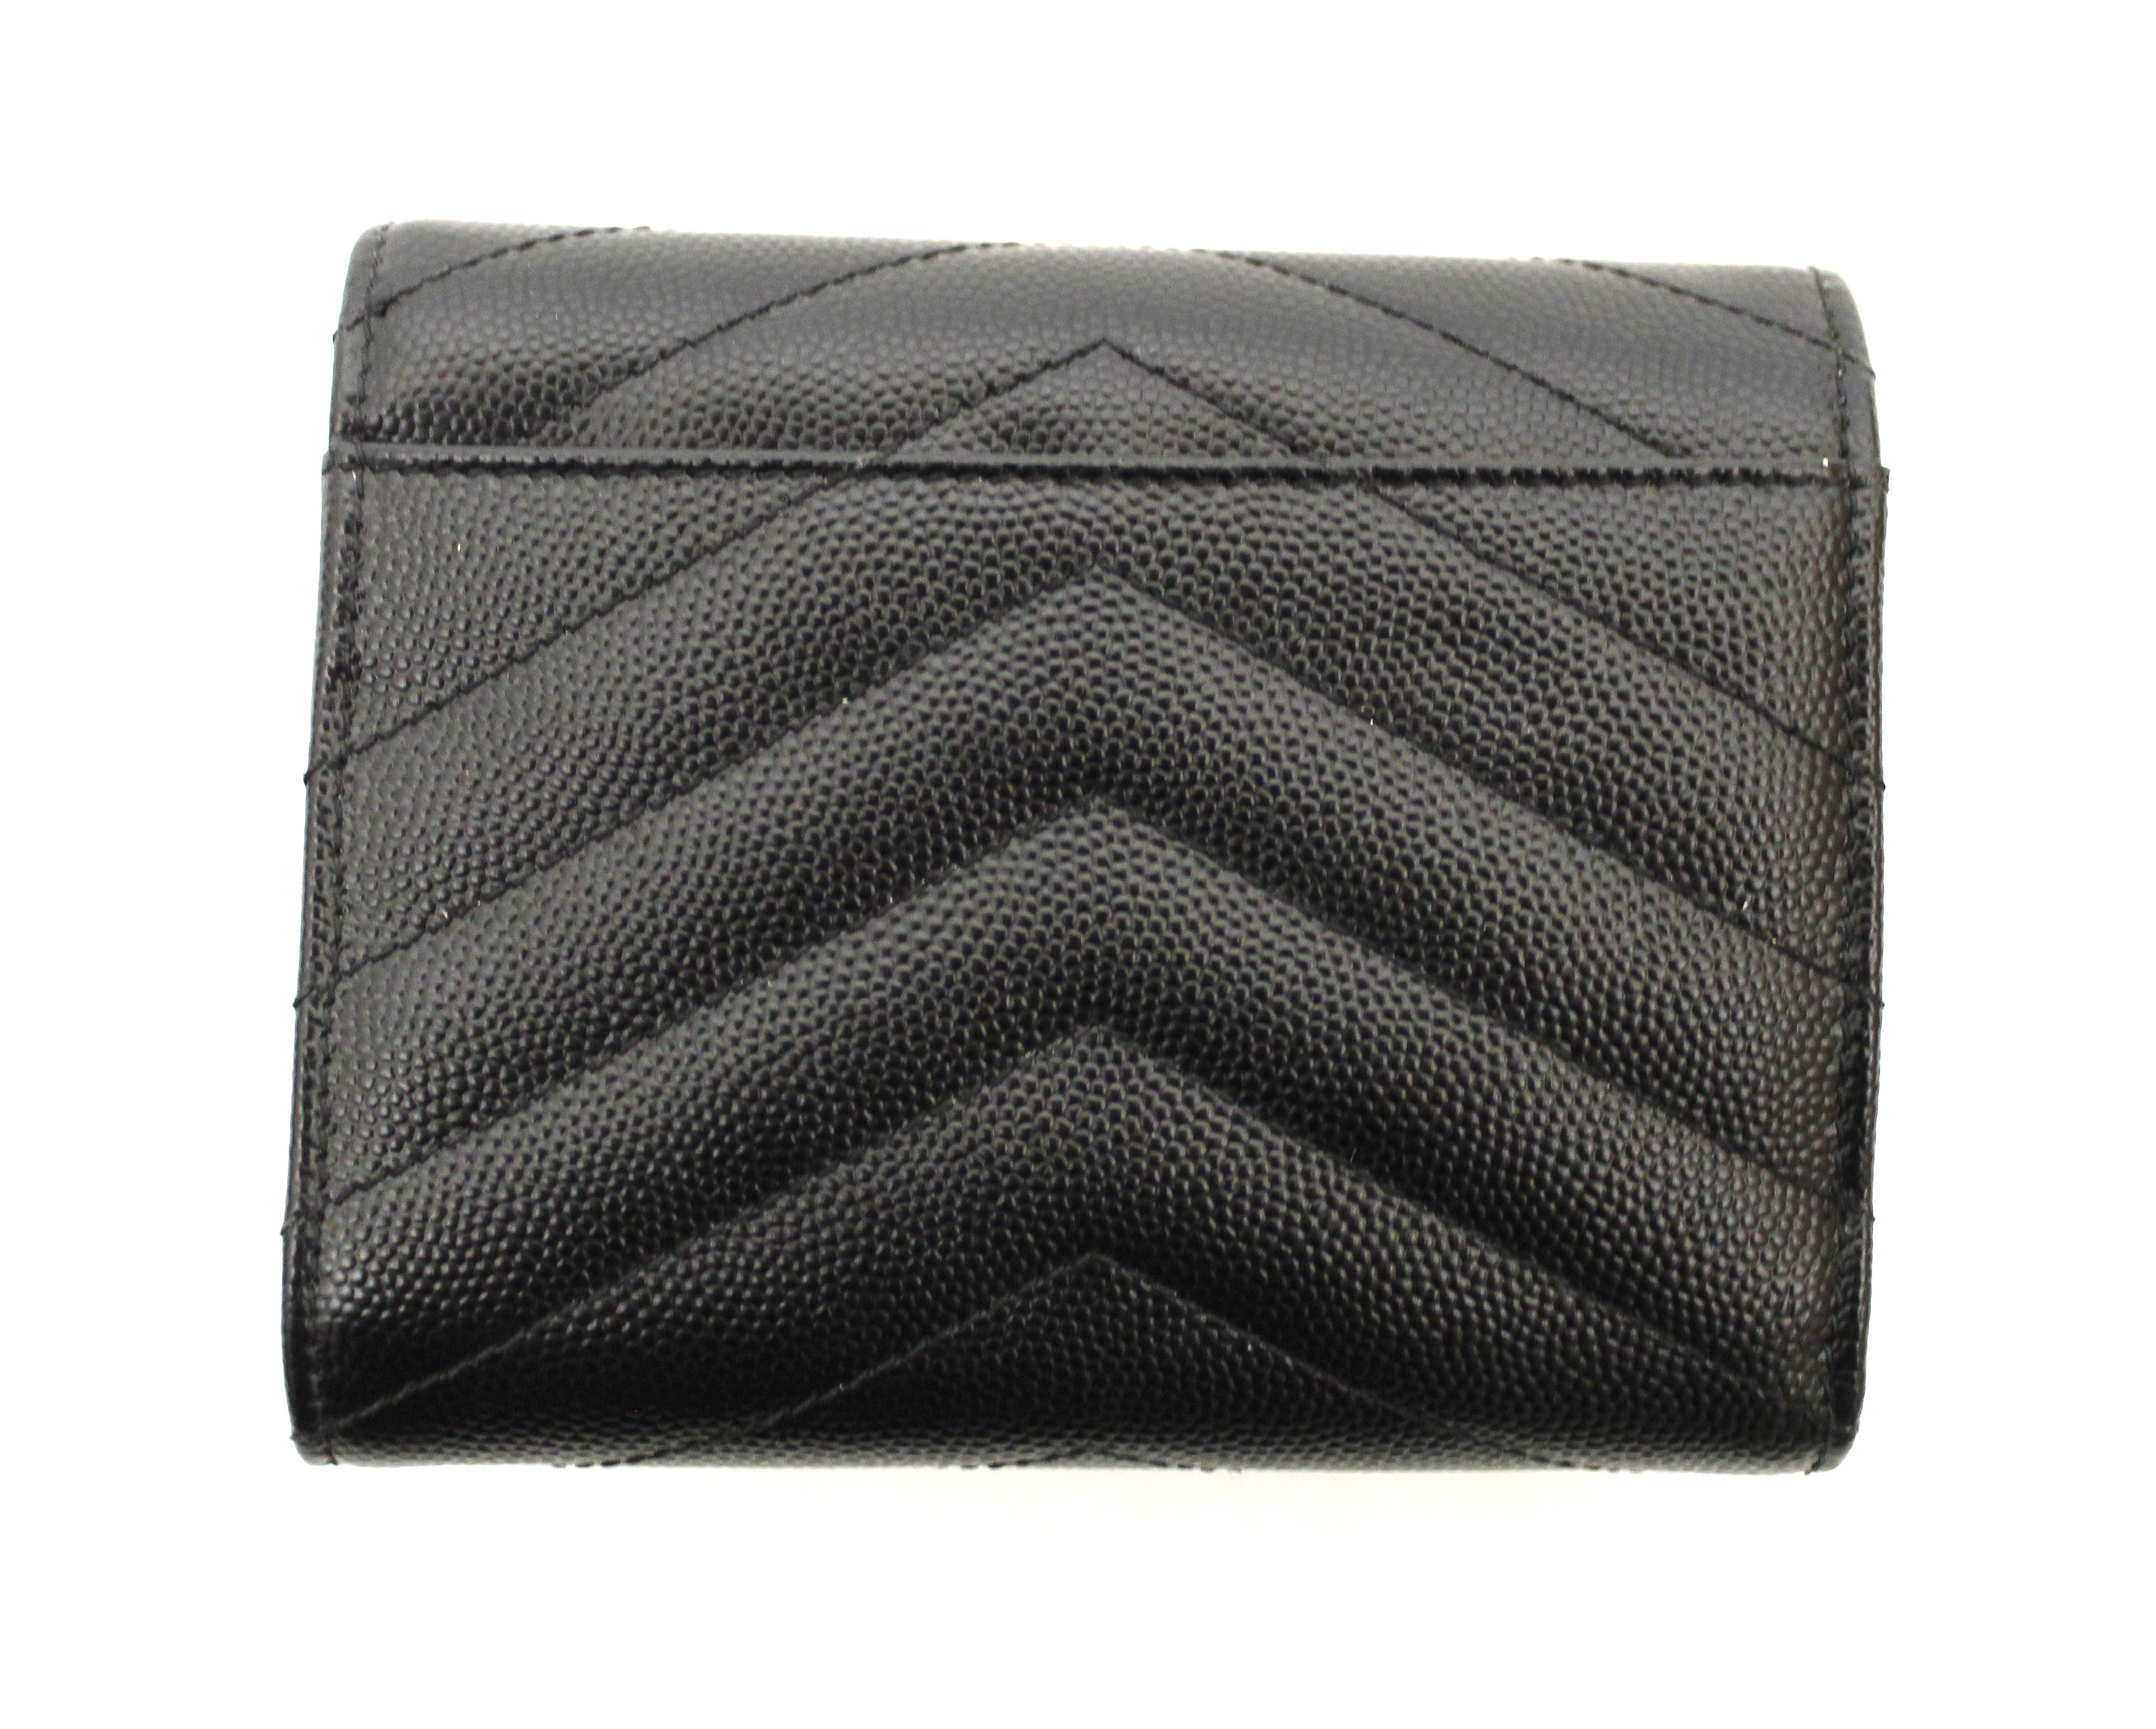 Authentic Yves Saint Laurent Black Monogram Small Grain de Poudre Tri-Fold Wallet